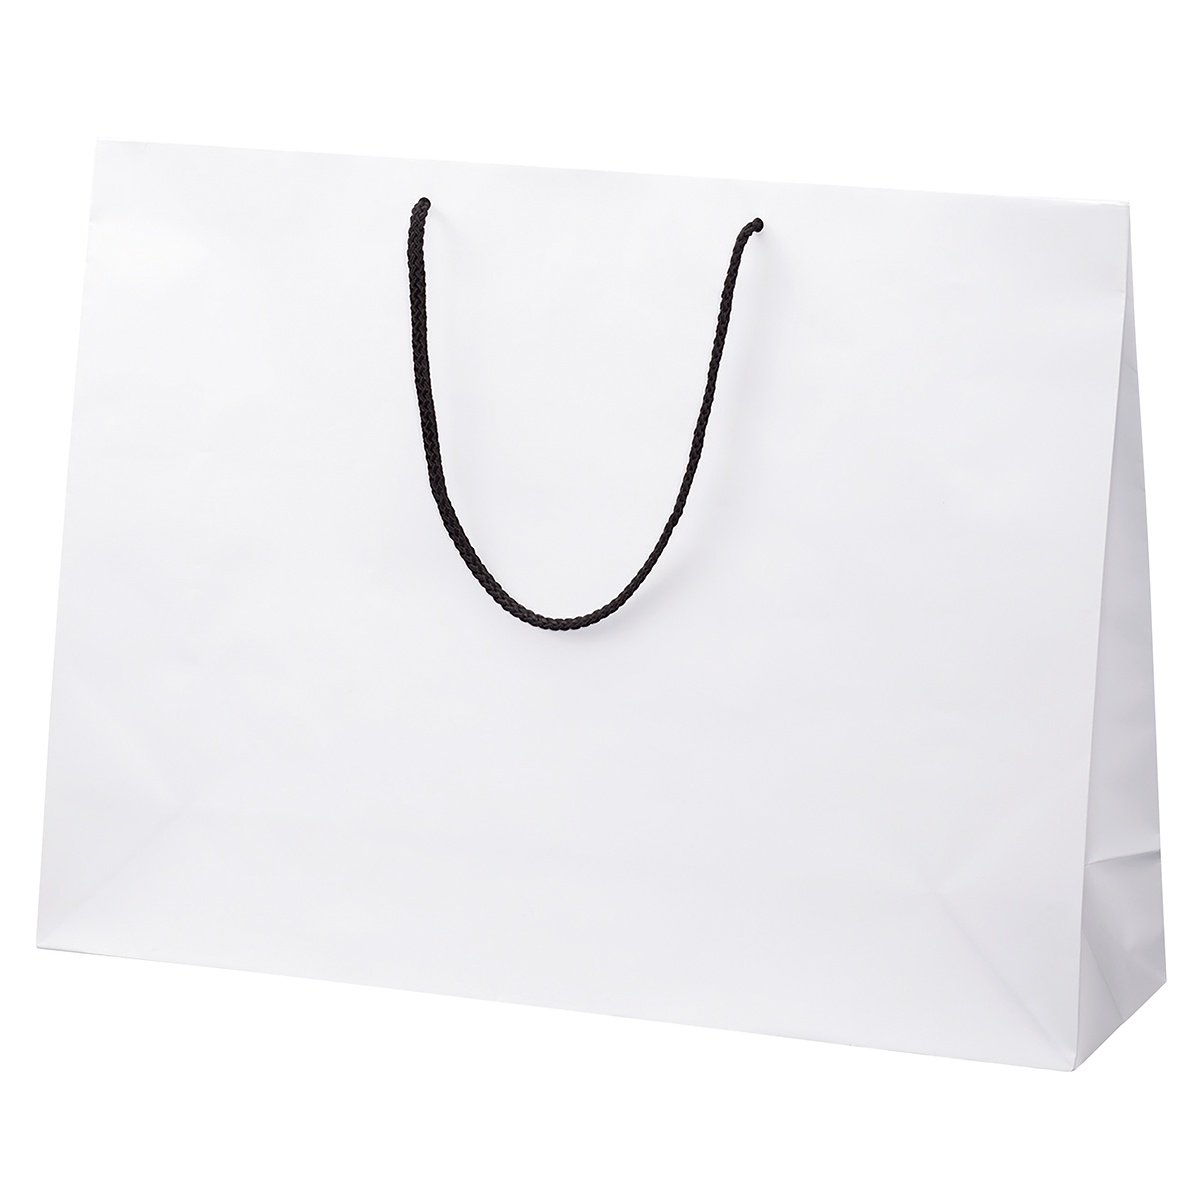 ケース販売HEIKO 紙袋 ブライトバッグ 55-15 白MT(マットPP貼り) 006459910 1ケース(10枚入×5袋 合計50枚) 